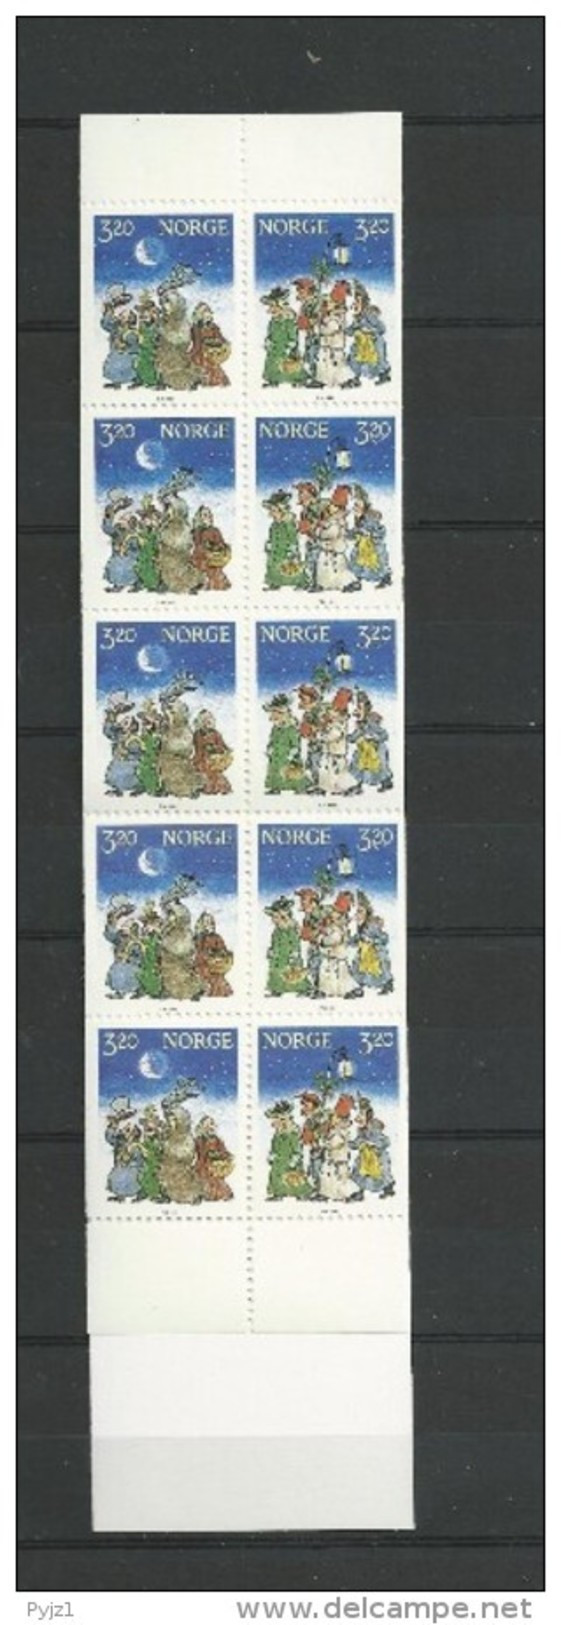 1991  MNH  Booklet, Norge, Norwegen, Norway, Postfris - Markenheftchen